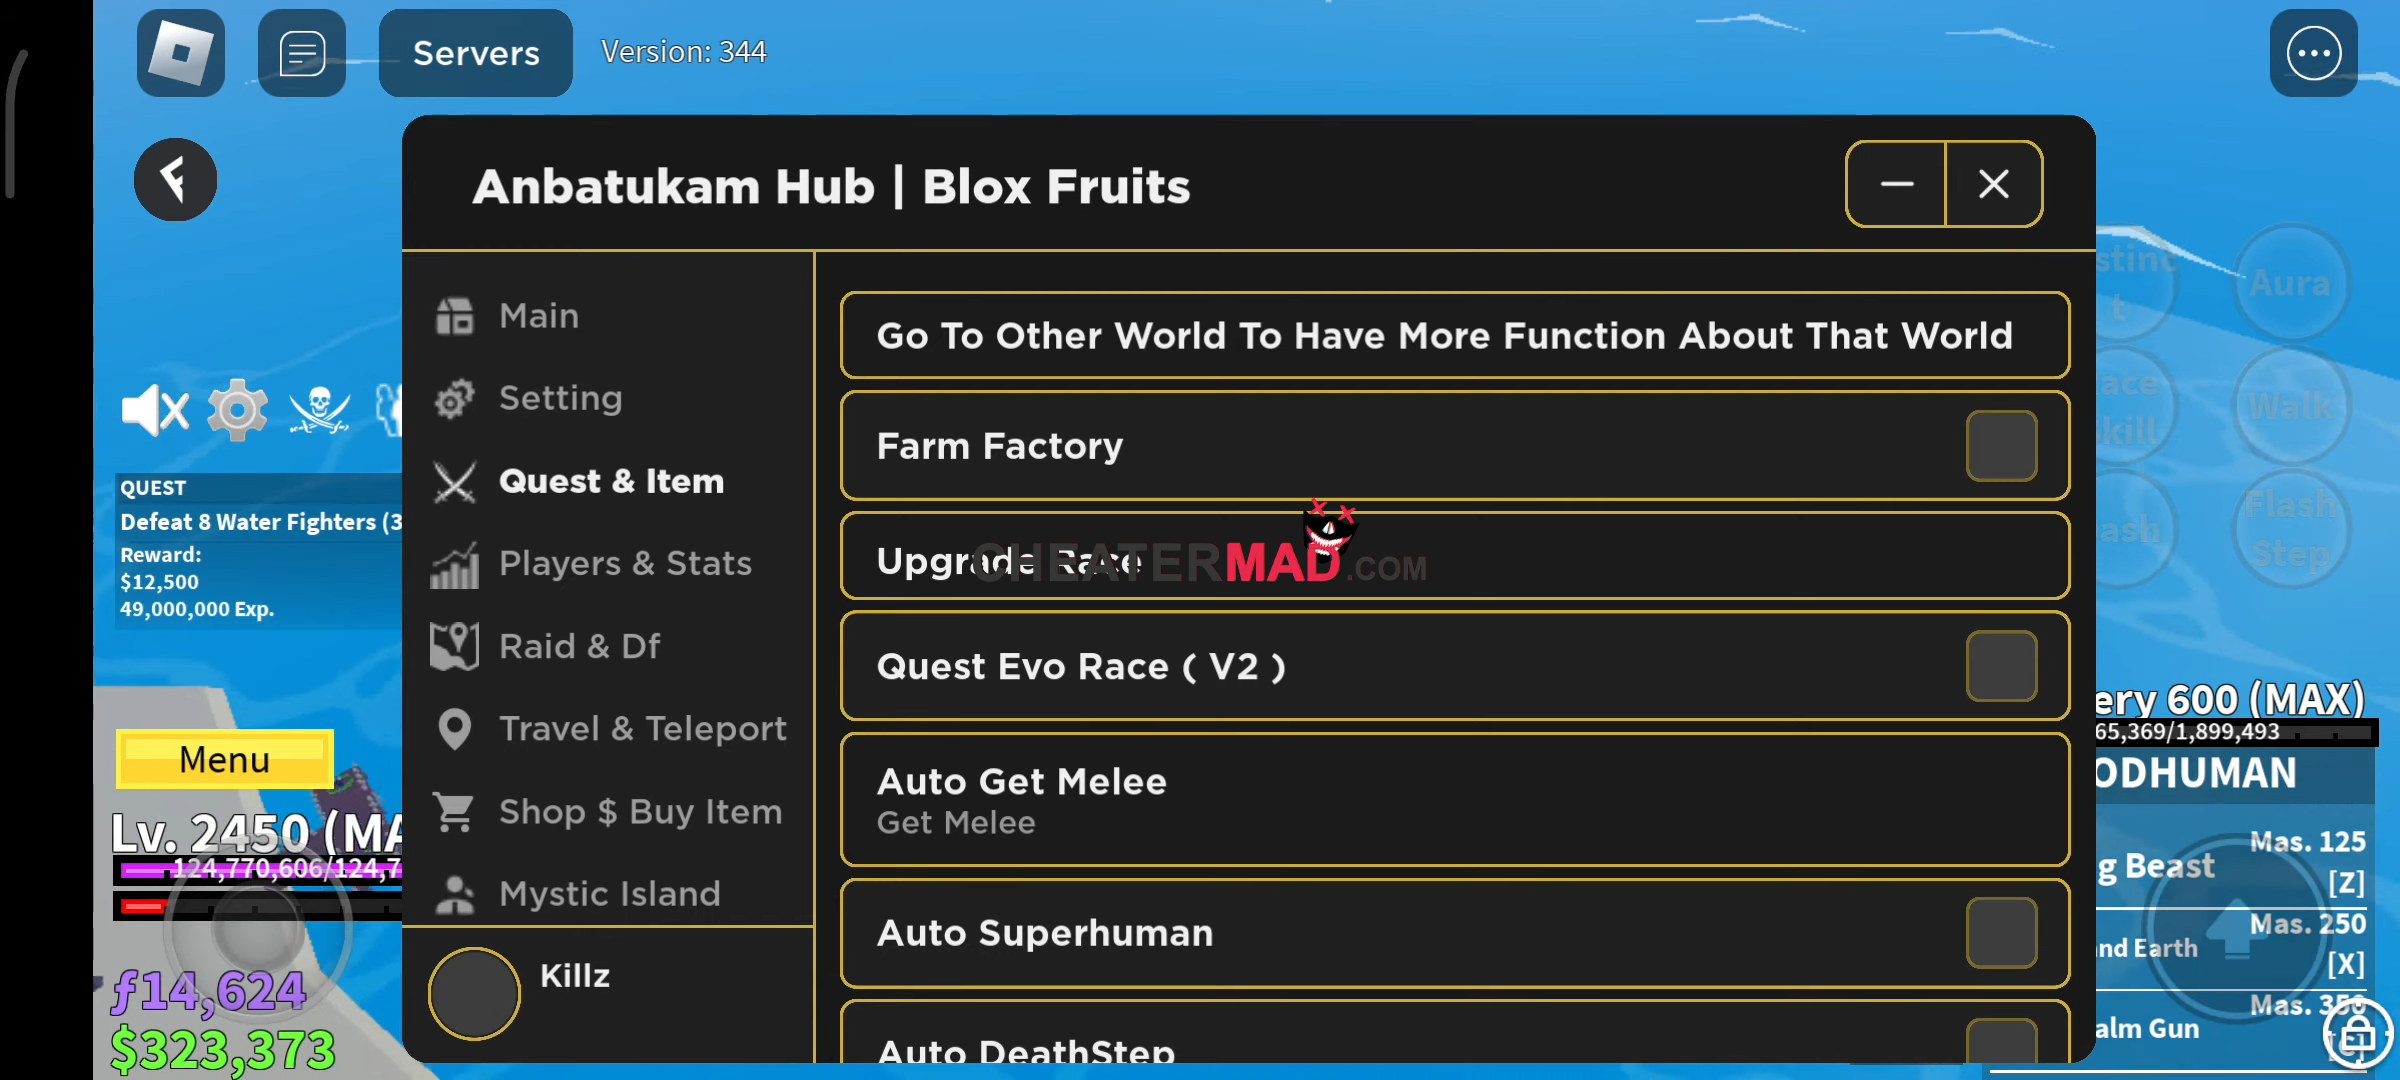 blox fruits anbatukam hub script